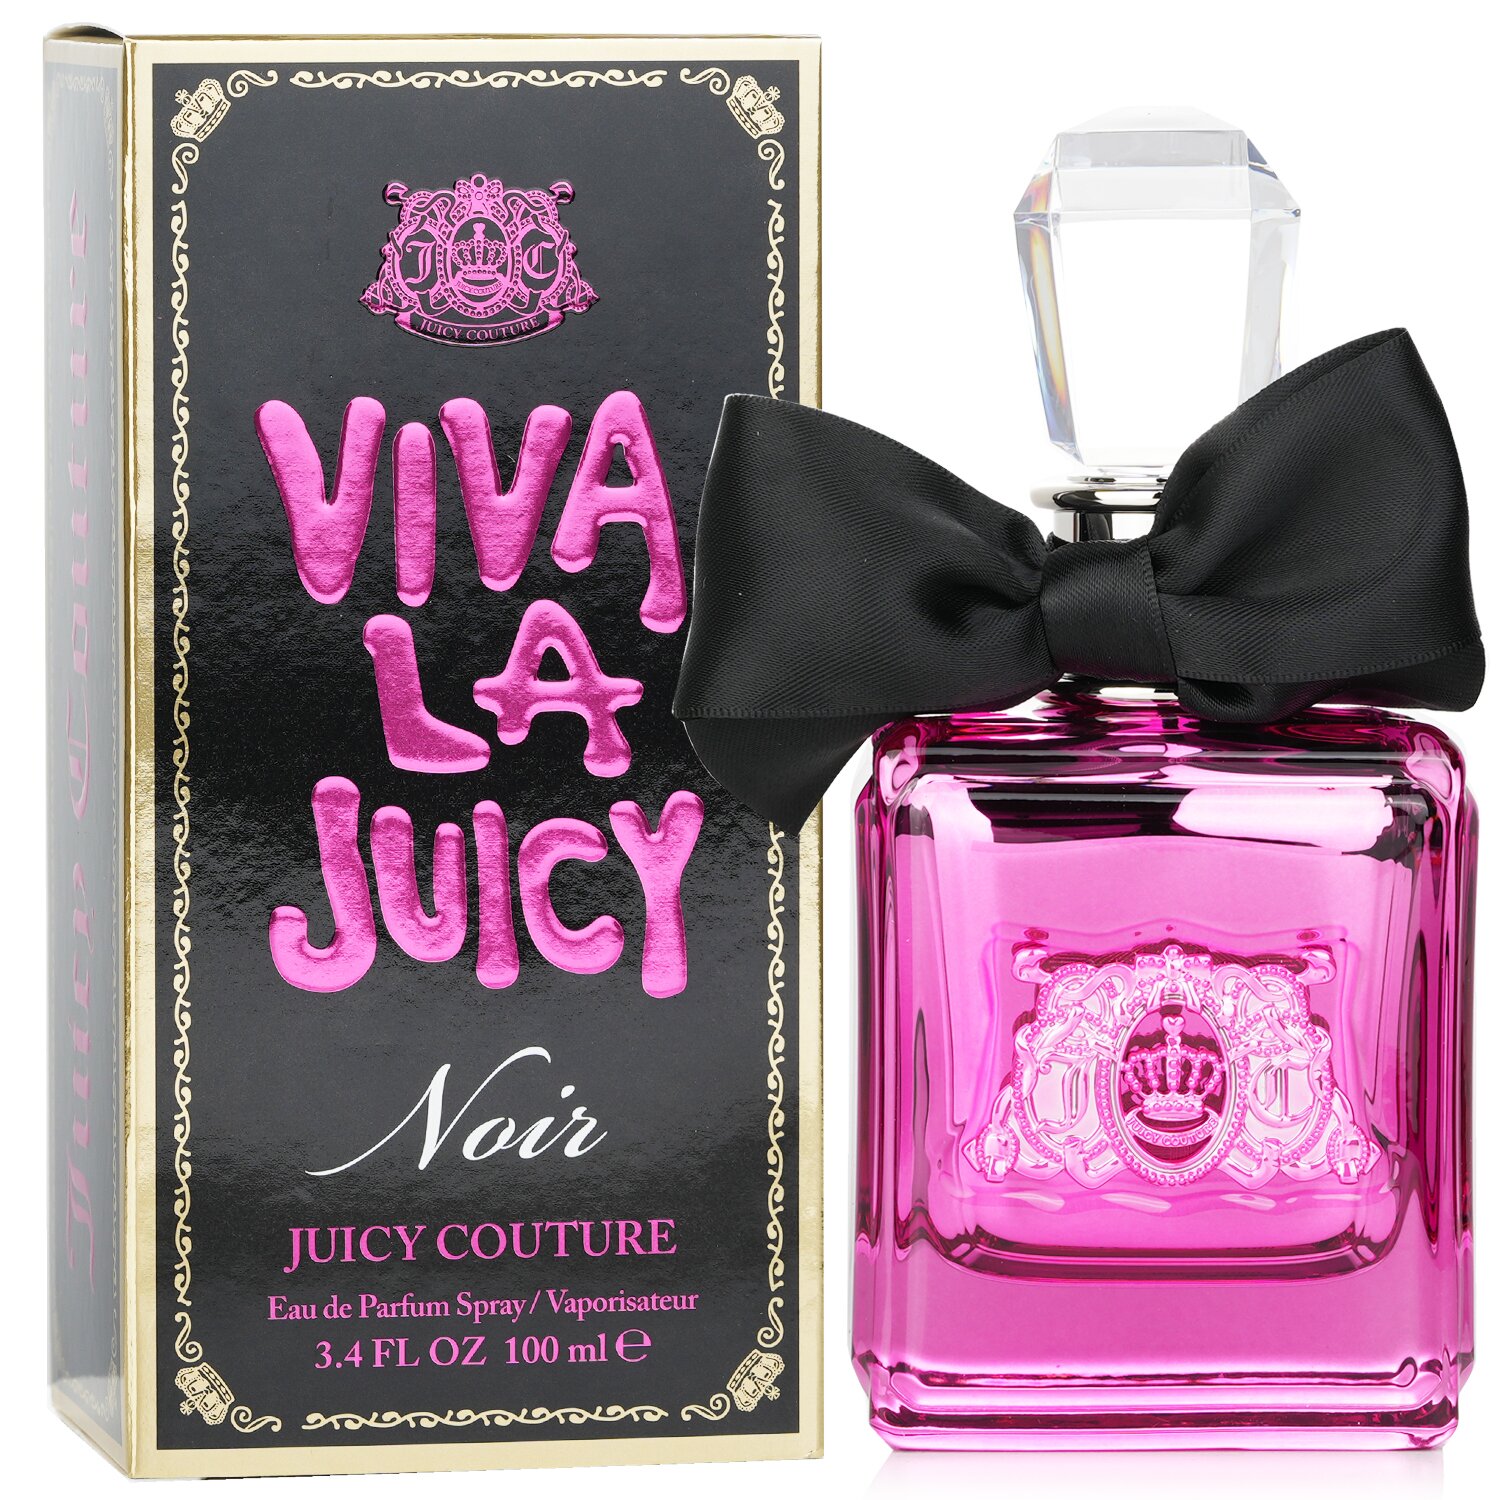 Juicy Couture Viva La Juicy Noir Eau De Parfum Spray 100ml/3.4oz